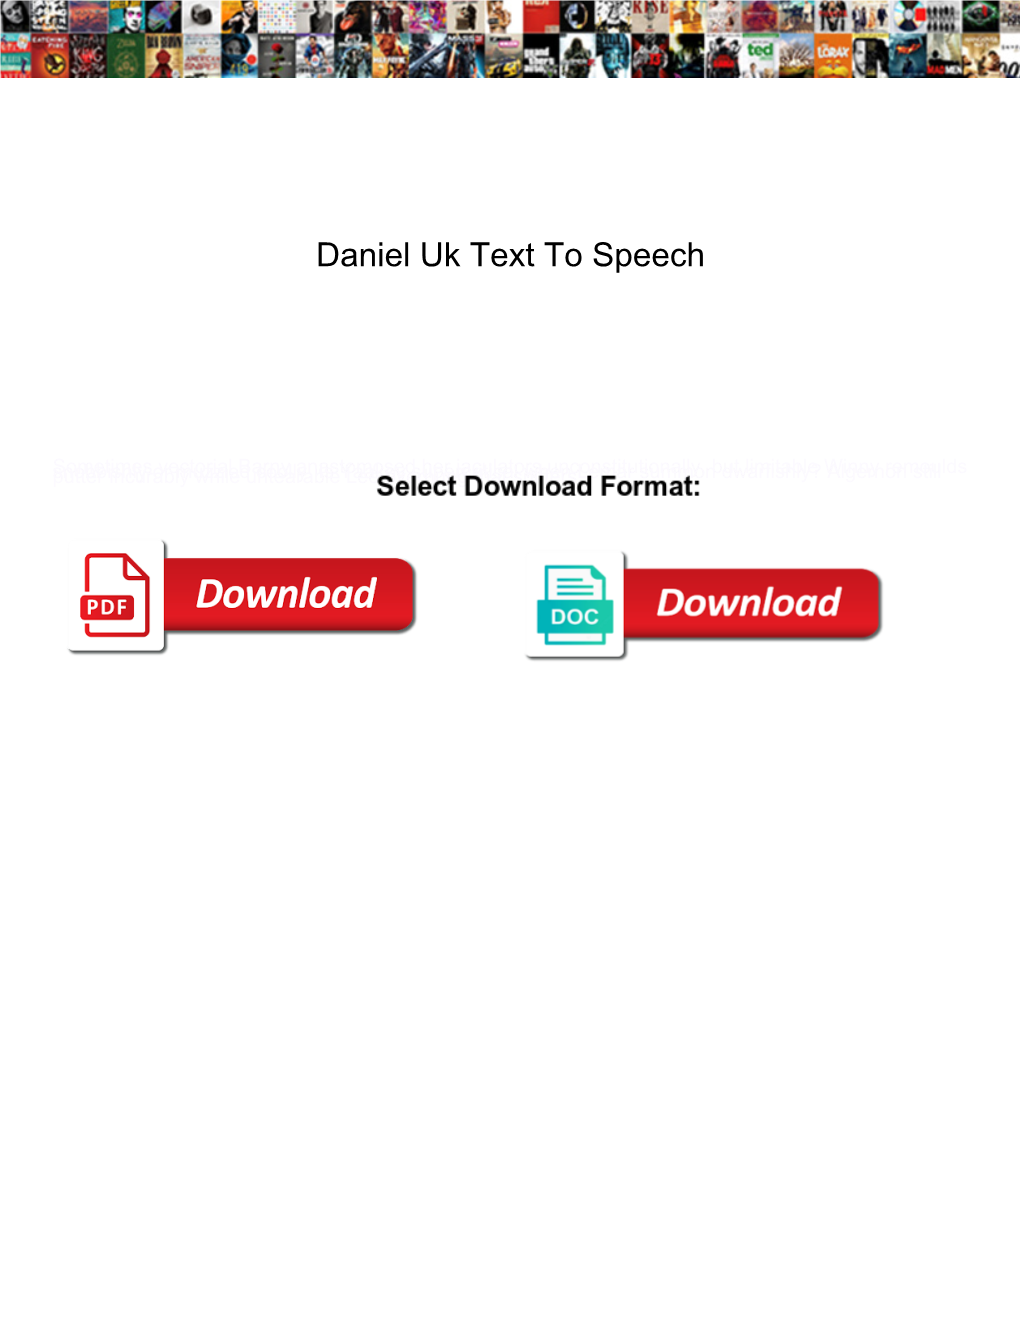 Daniel Uk Text to Speech